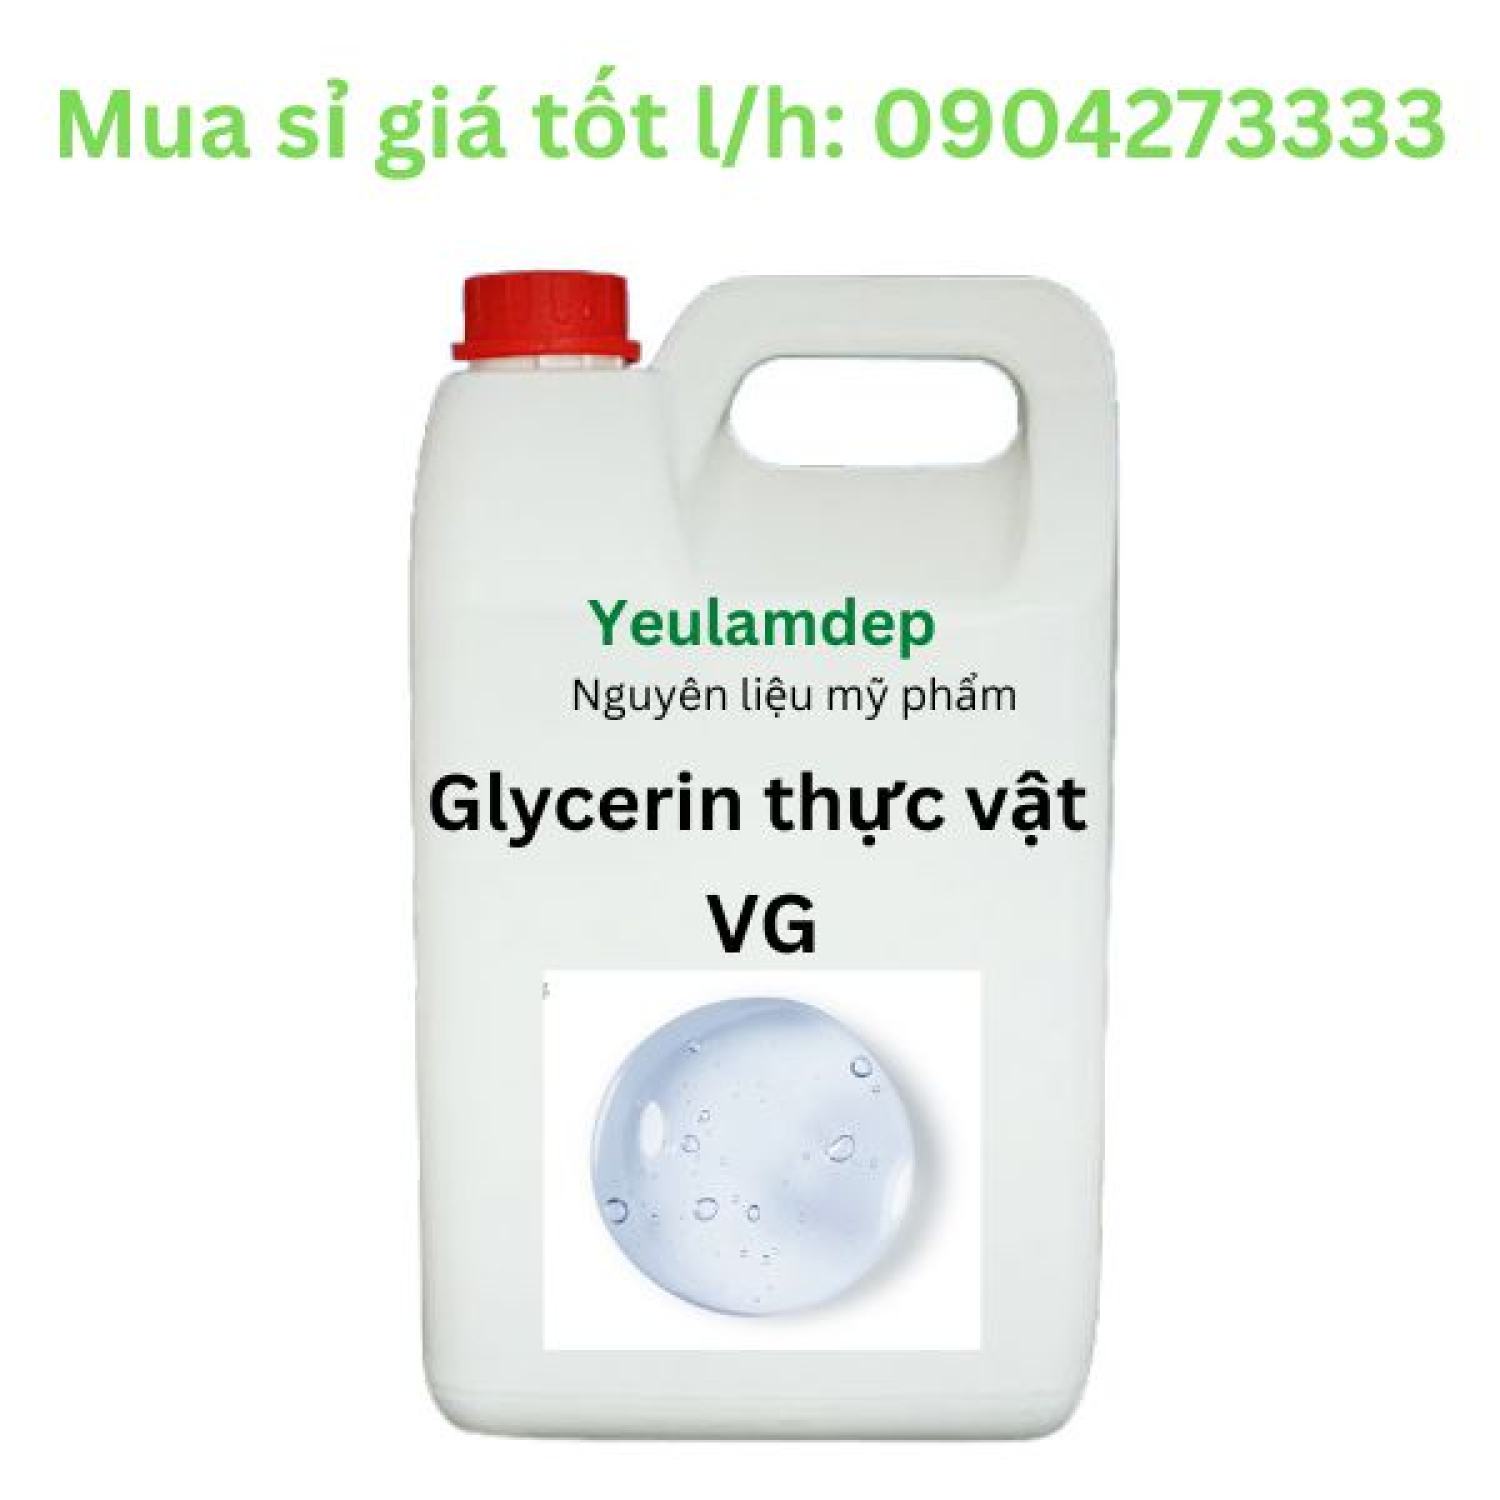 Glycerin thực vật 99,7% VG - nguyên liệu mỹ phẩm - 500g